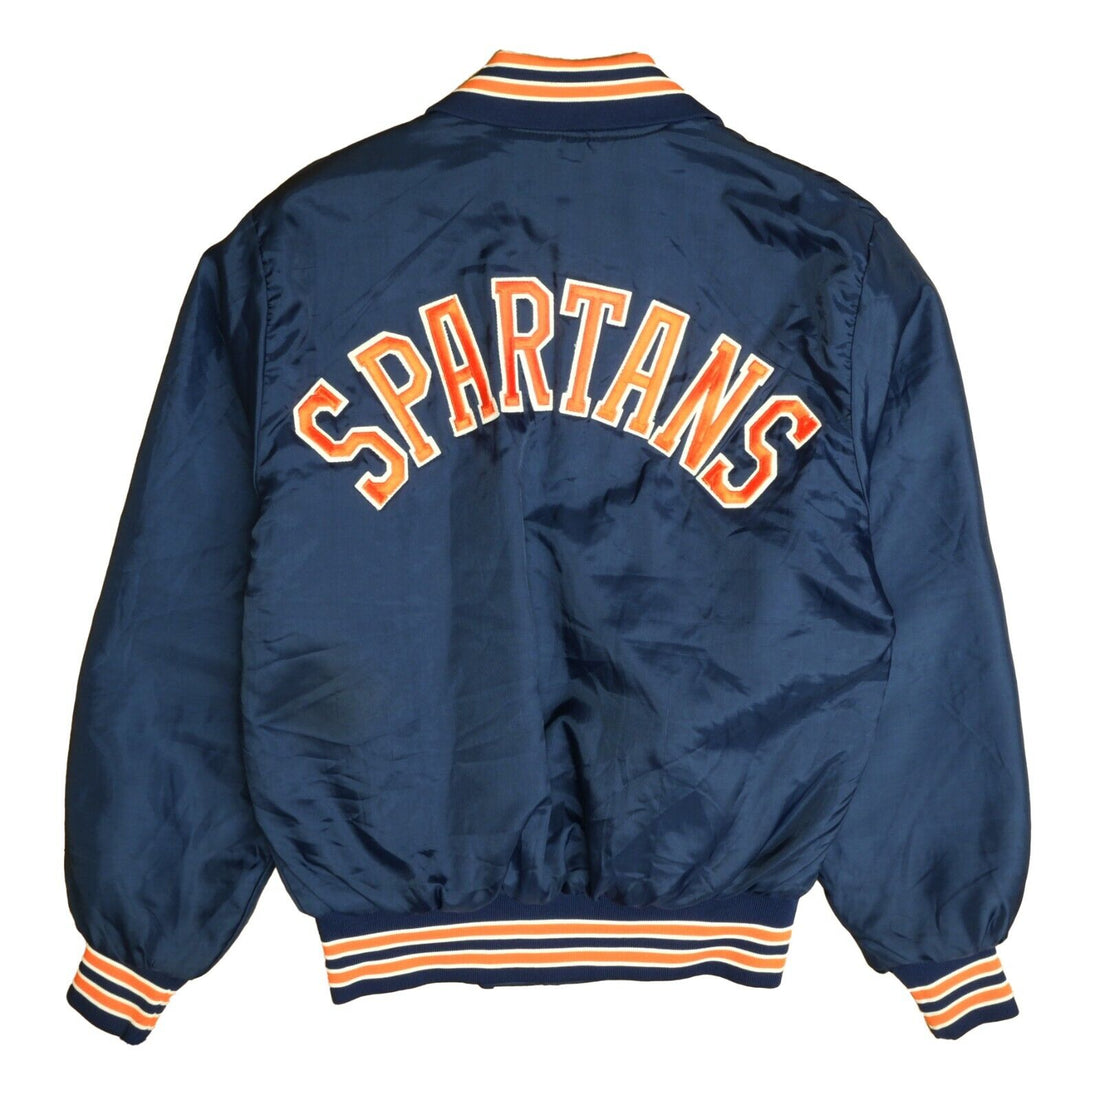 Vintage Spartans Varsity Bomber Jacket Size Medium Blue